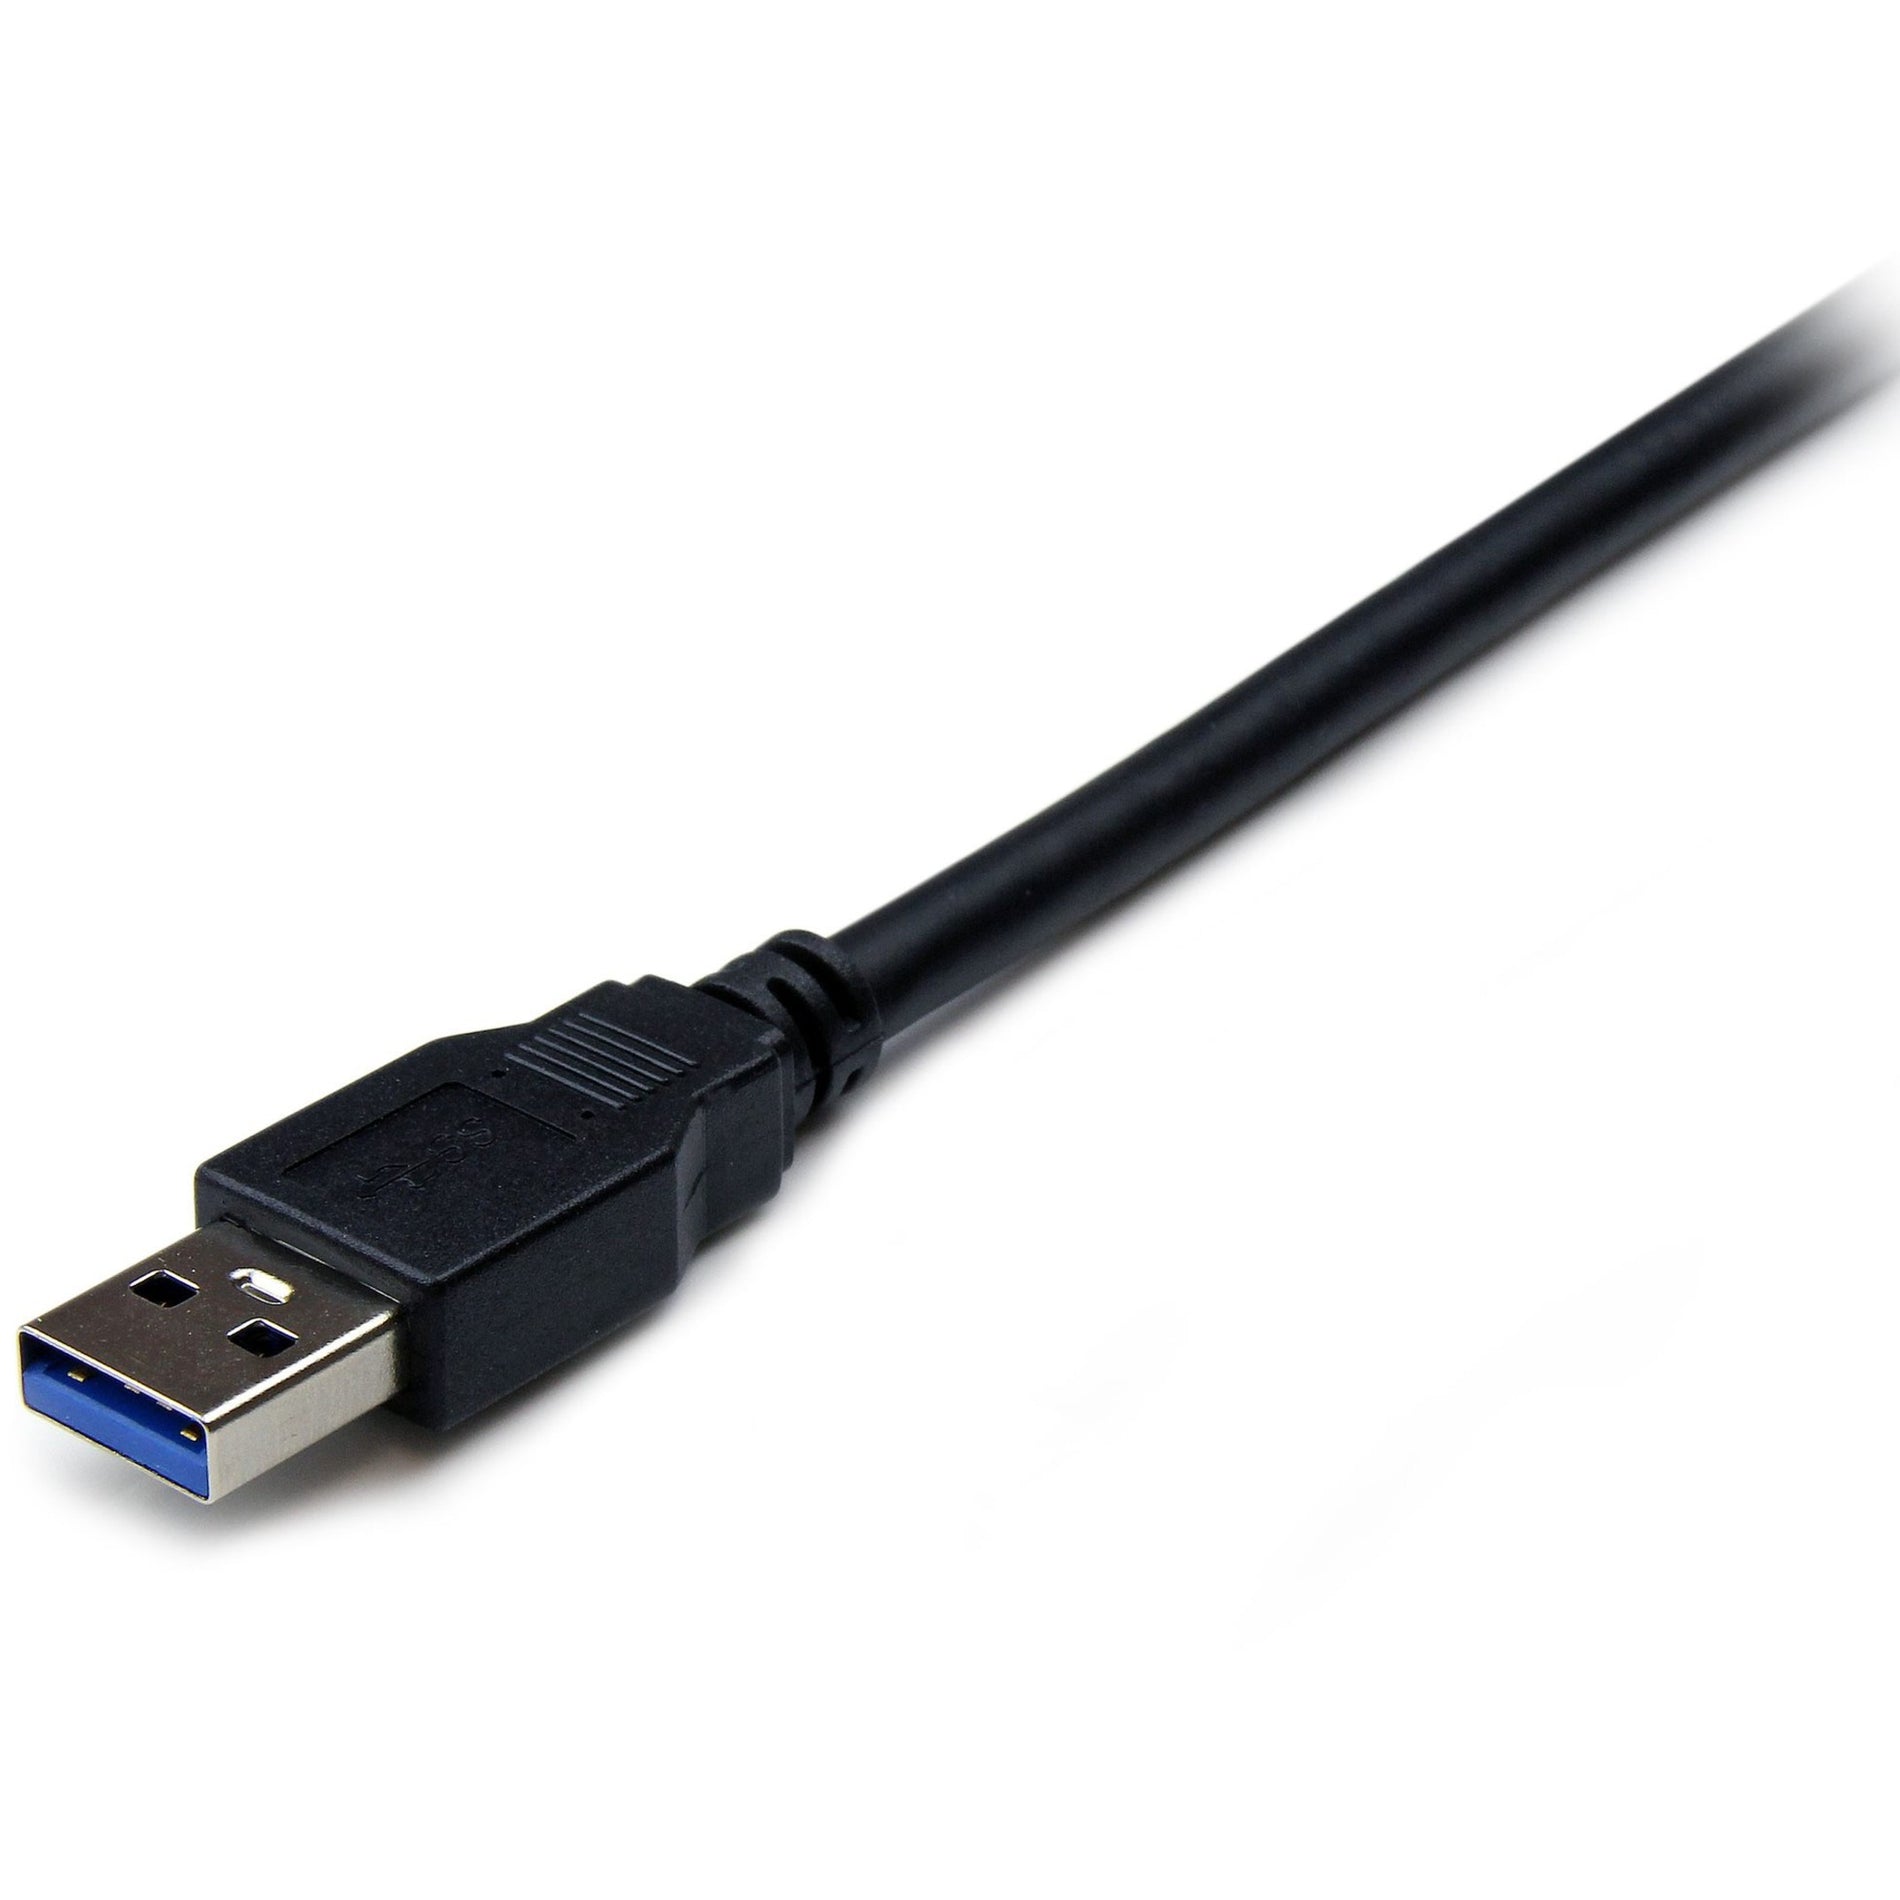 كابل تمديد USB 3.0 نوع A إلى نوع A - ذكر/أنثى بطول 6 أقدام باللون الأسود من StarTech.com، نقل بيانات عالية السرعة، ضمان مدي الحياة